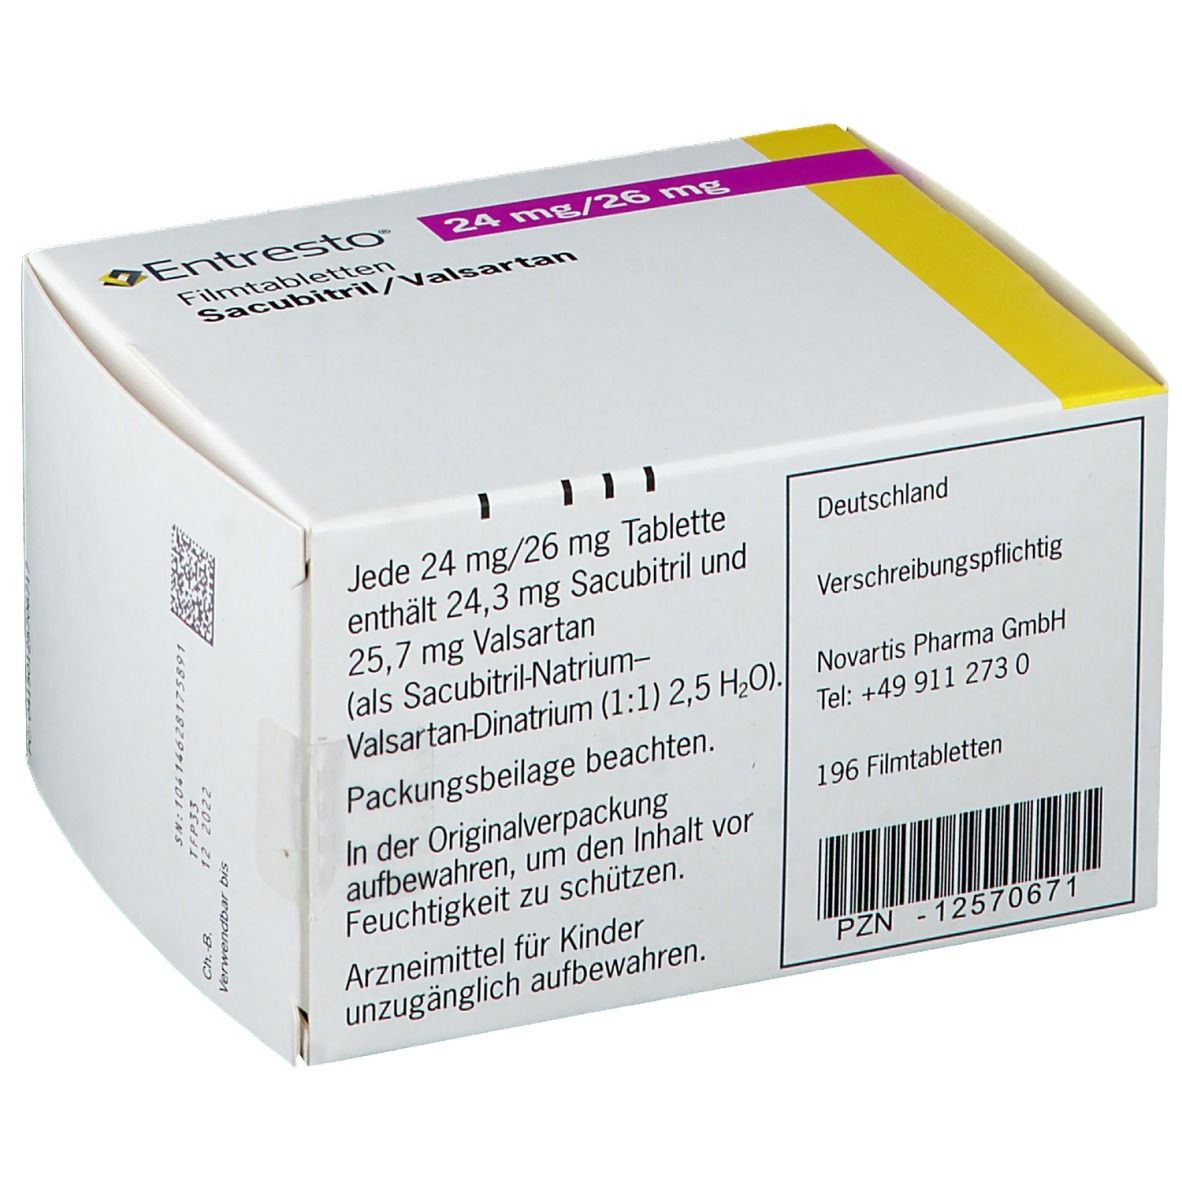 Entresto® 24 mg/26 mg